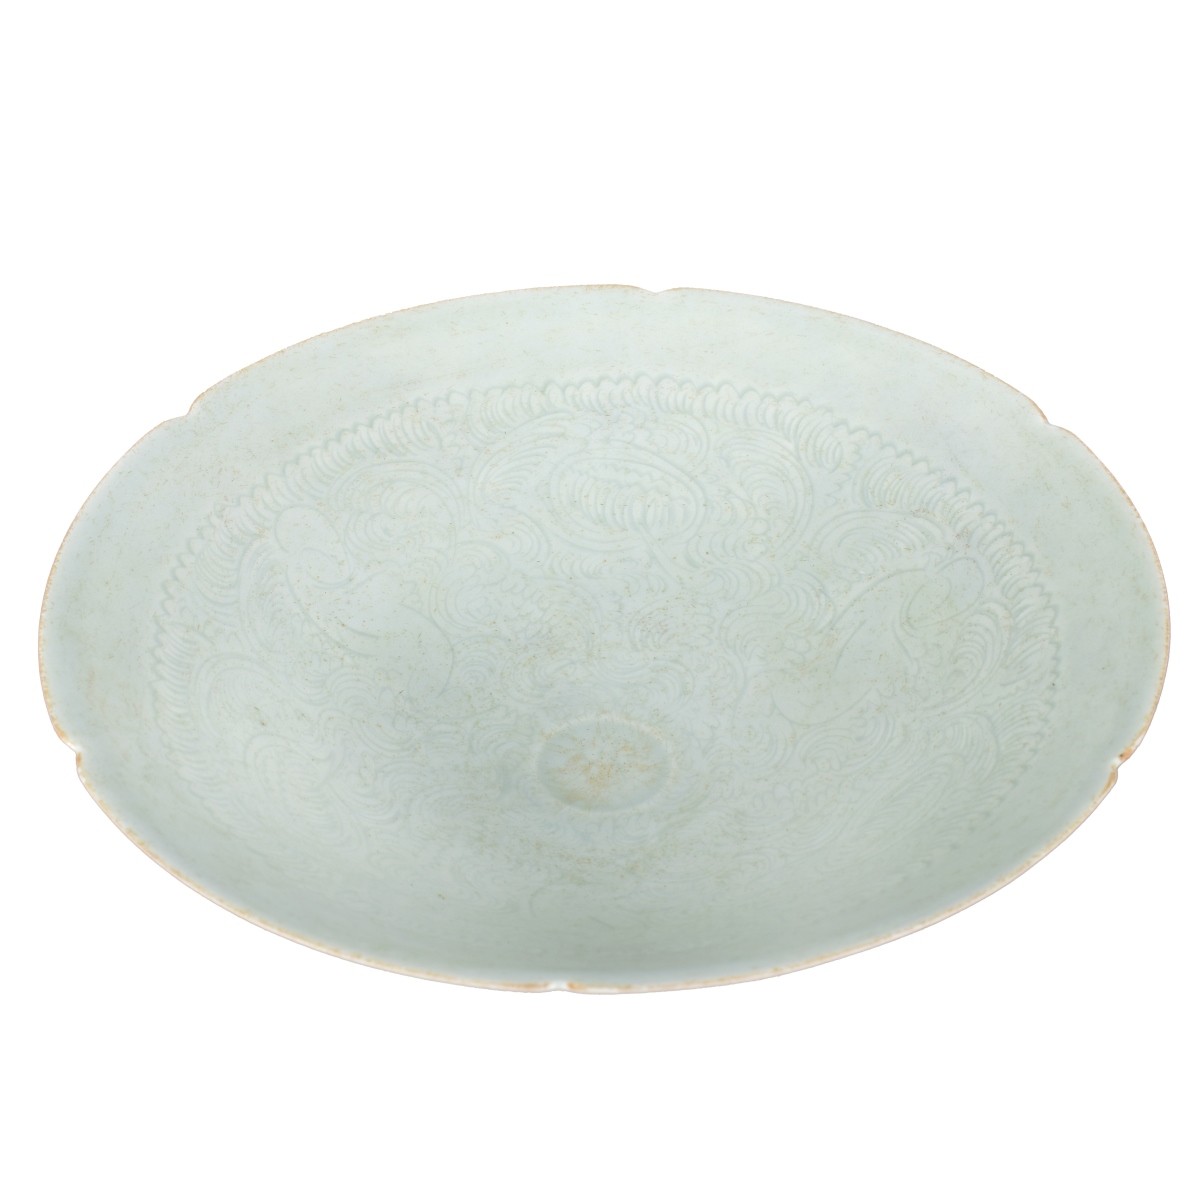 Chinese Glazed Celadon Porcelain Bowl